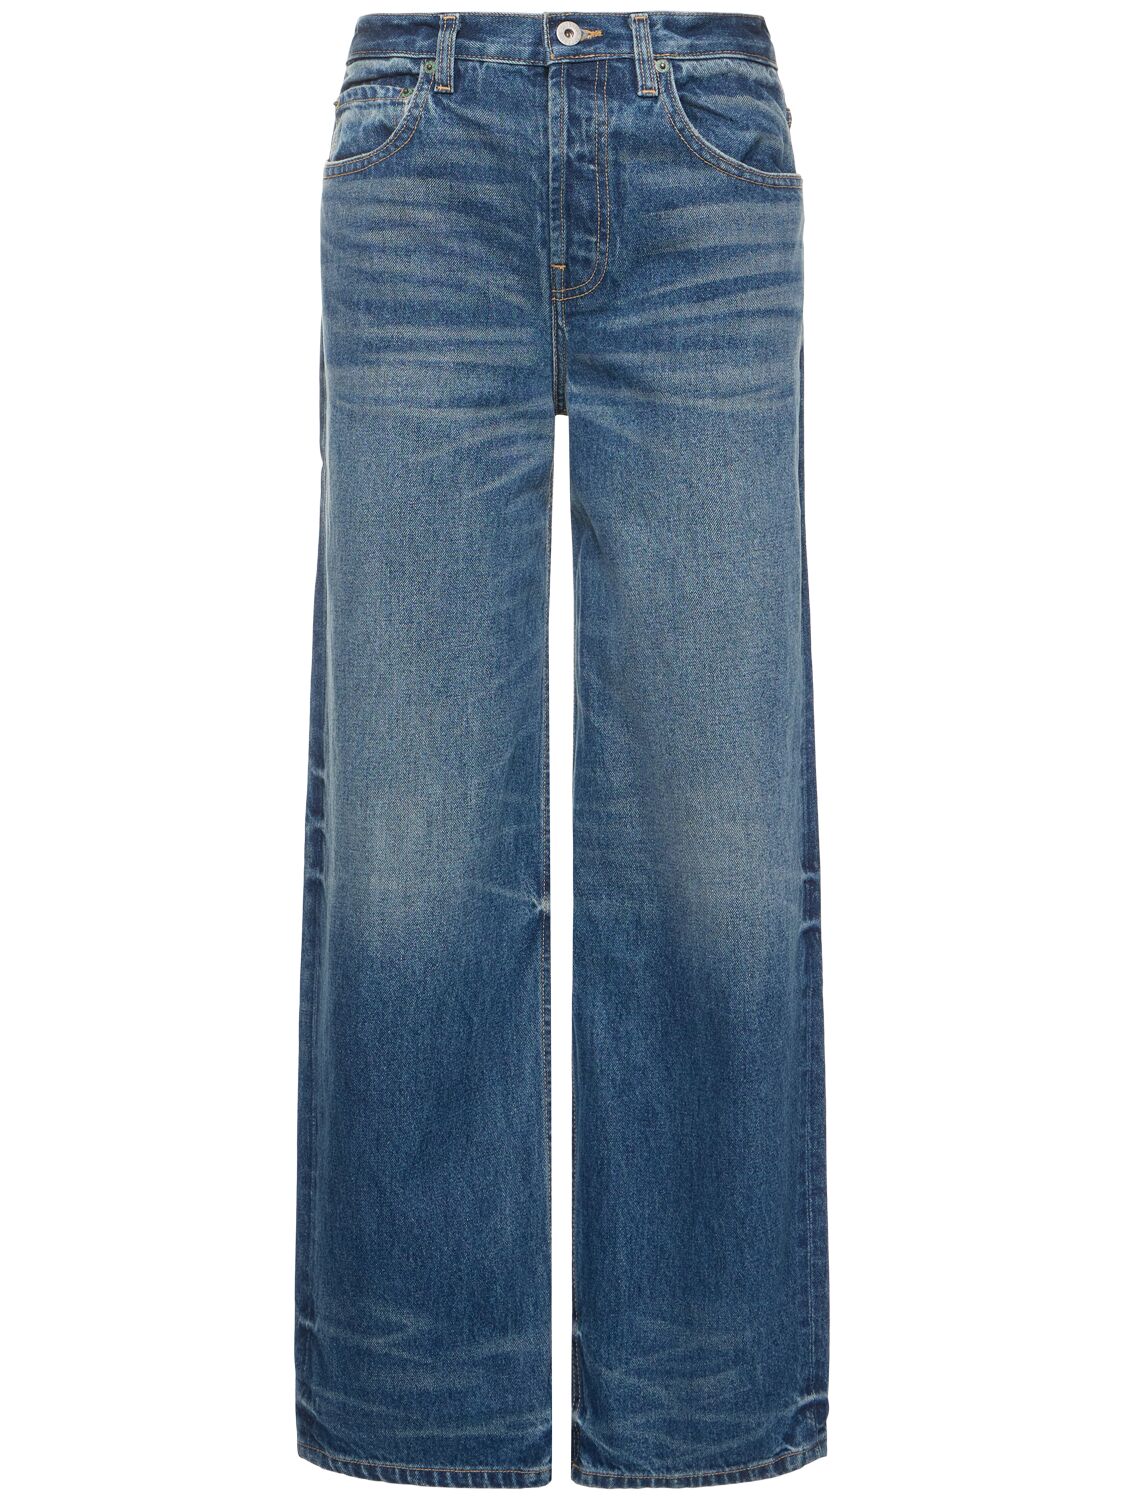 Mujer Jeans Rectos De Denim De Algodón 24 - INTERIOR - Modalova